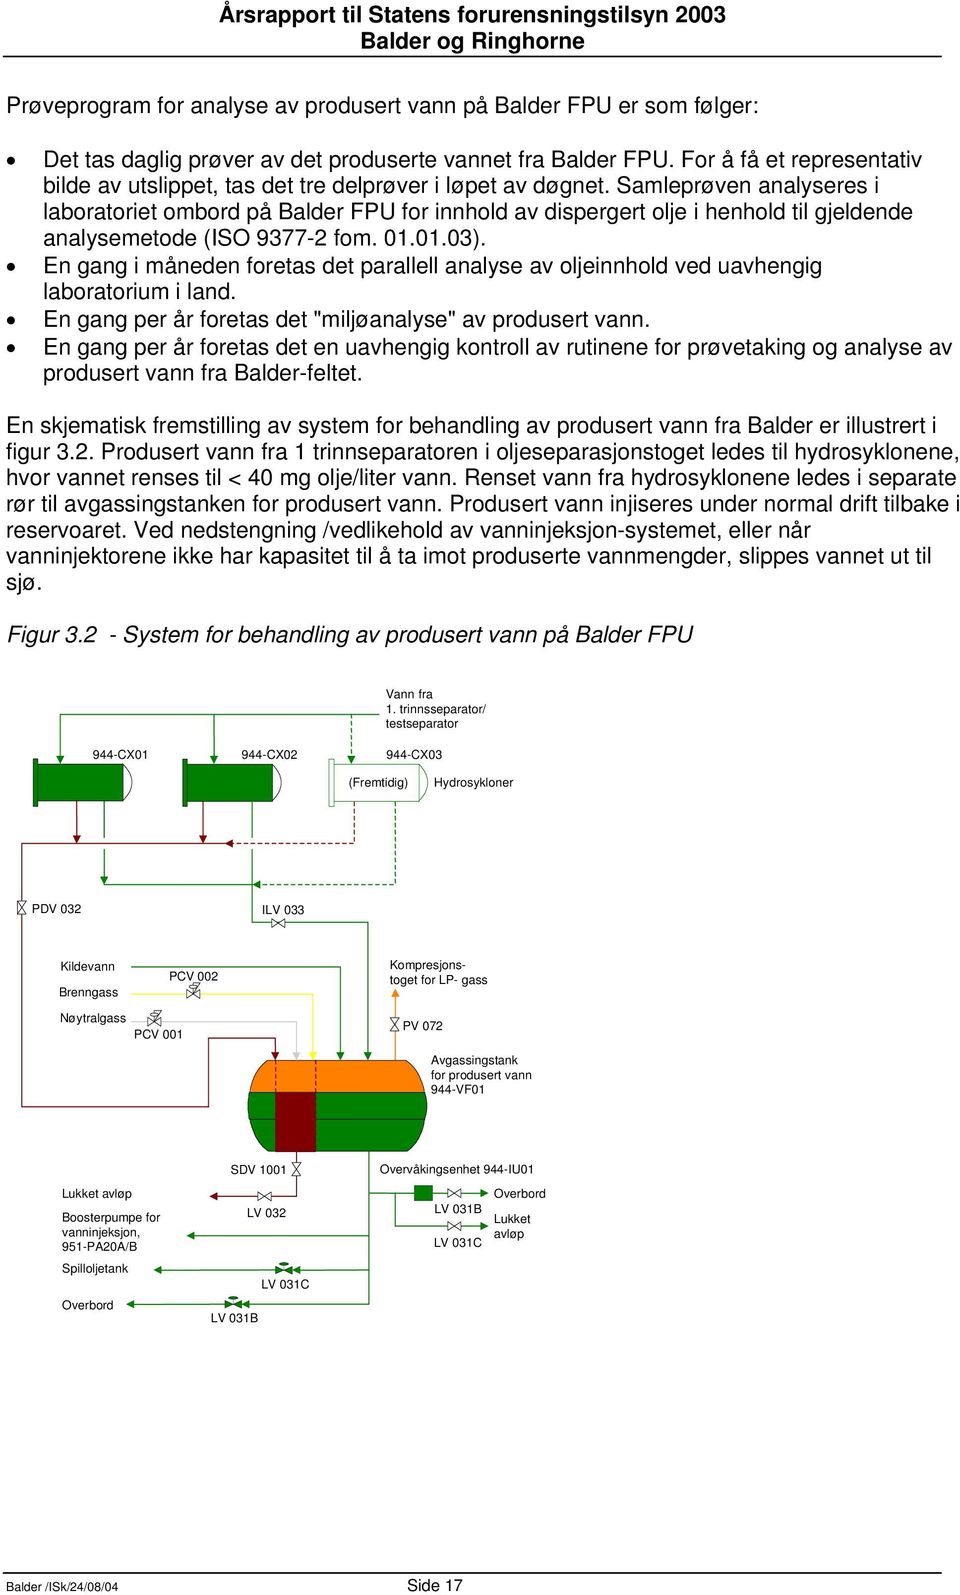 Samleprøven analyseres i laboratoriet ombord på Balder FPU for innhold av dispergert olje i henhold til gjeldende analysemetode (ISO 9377-2 fom. 01.01.03).